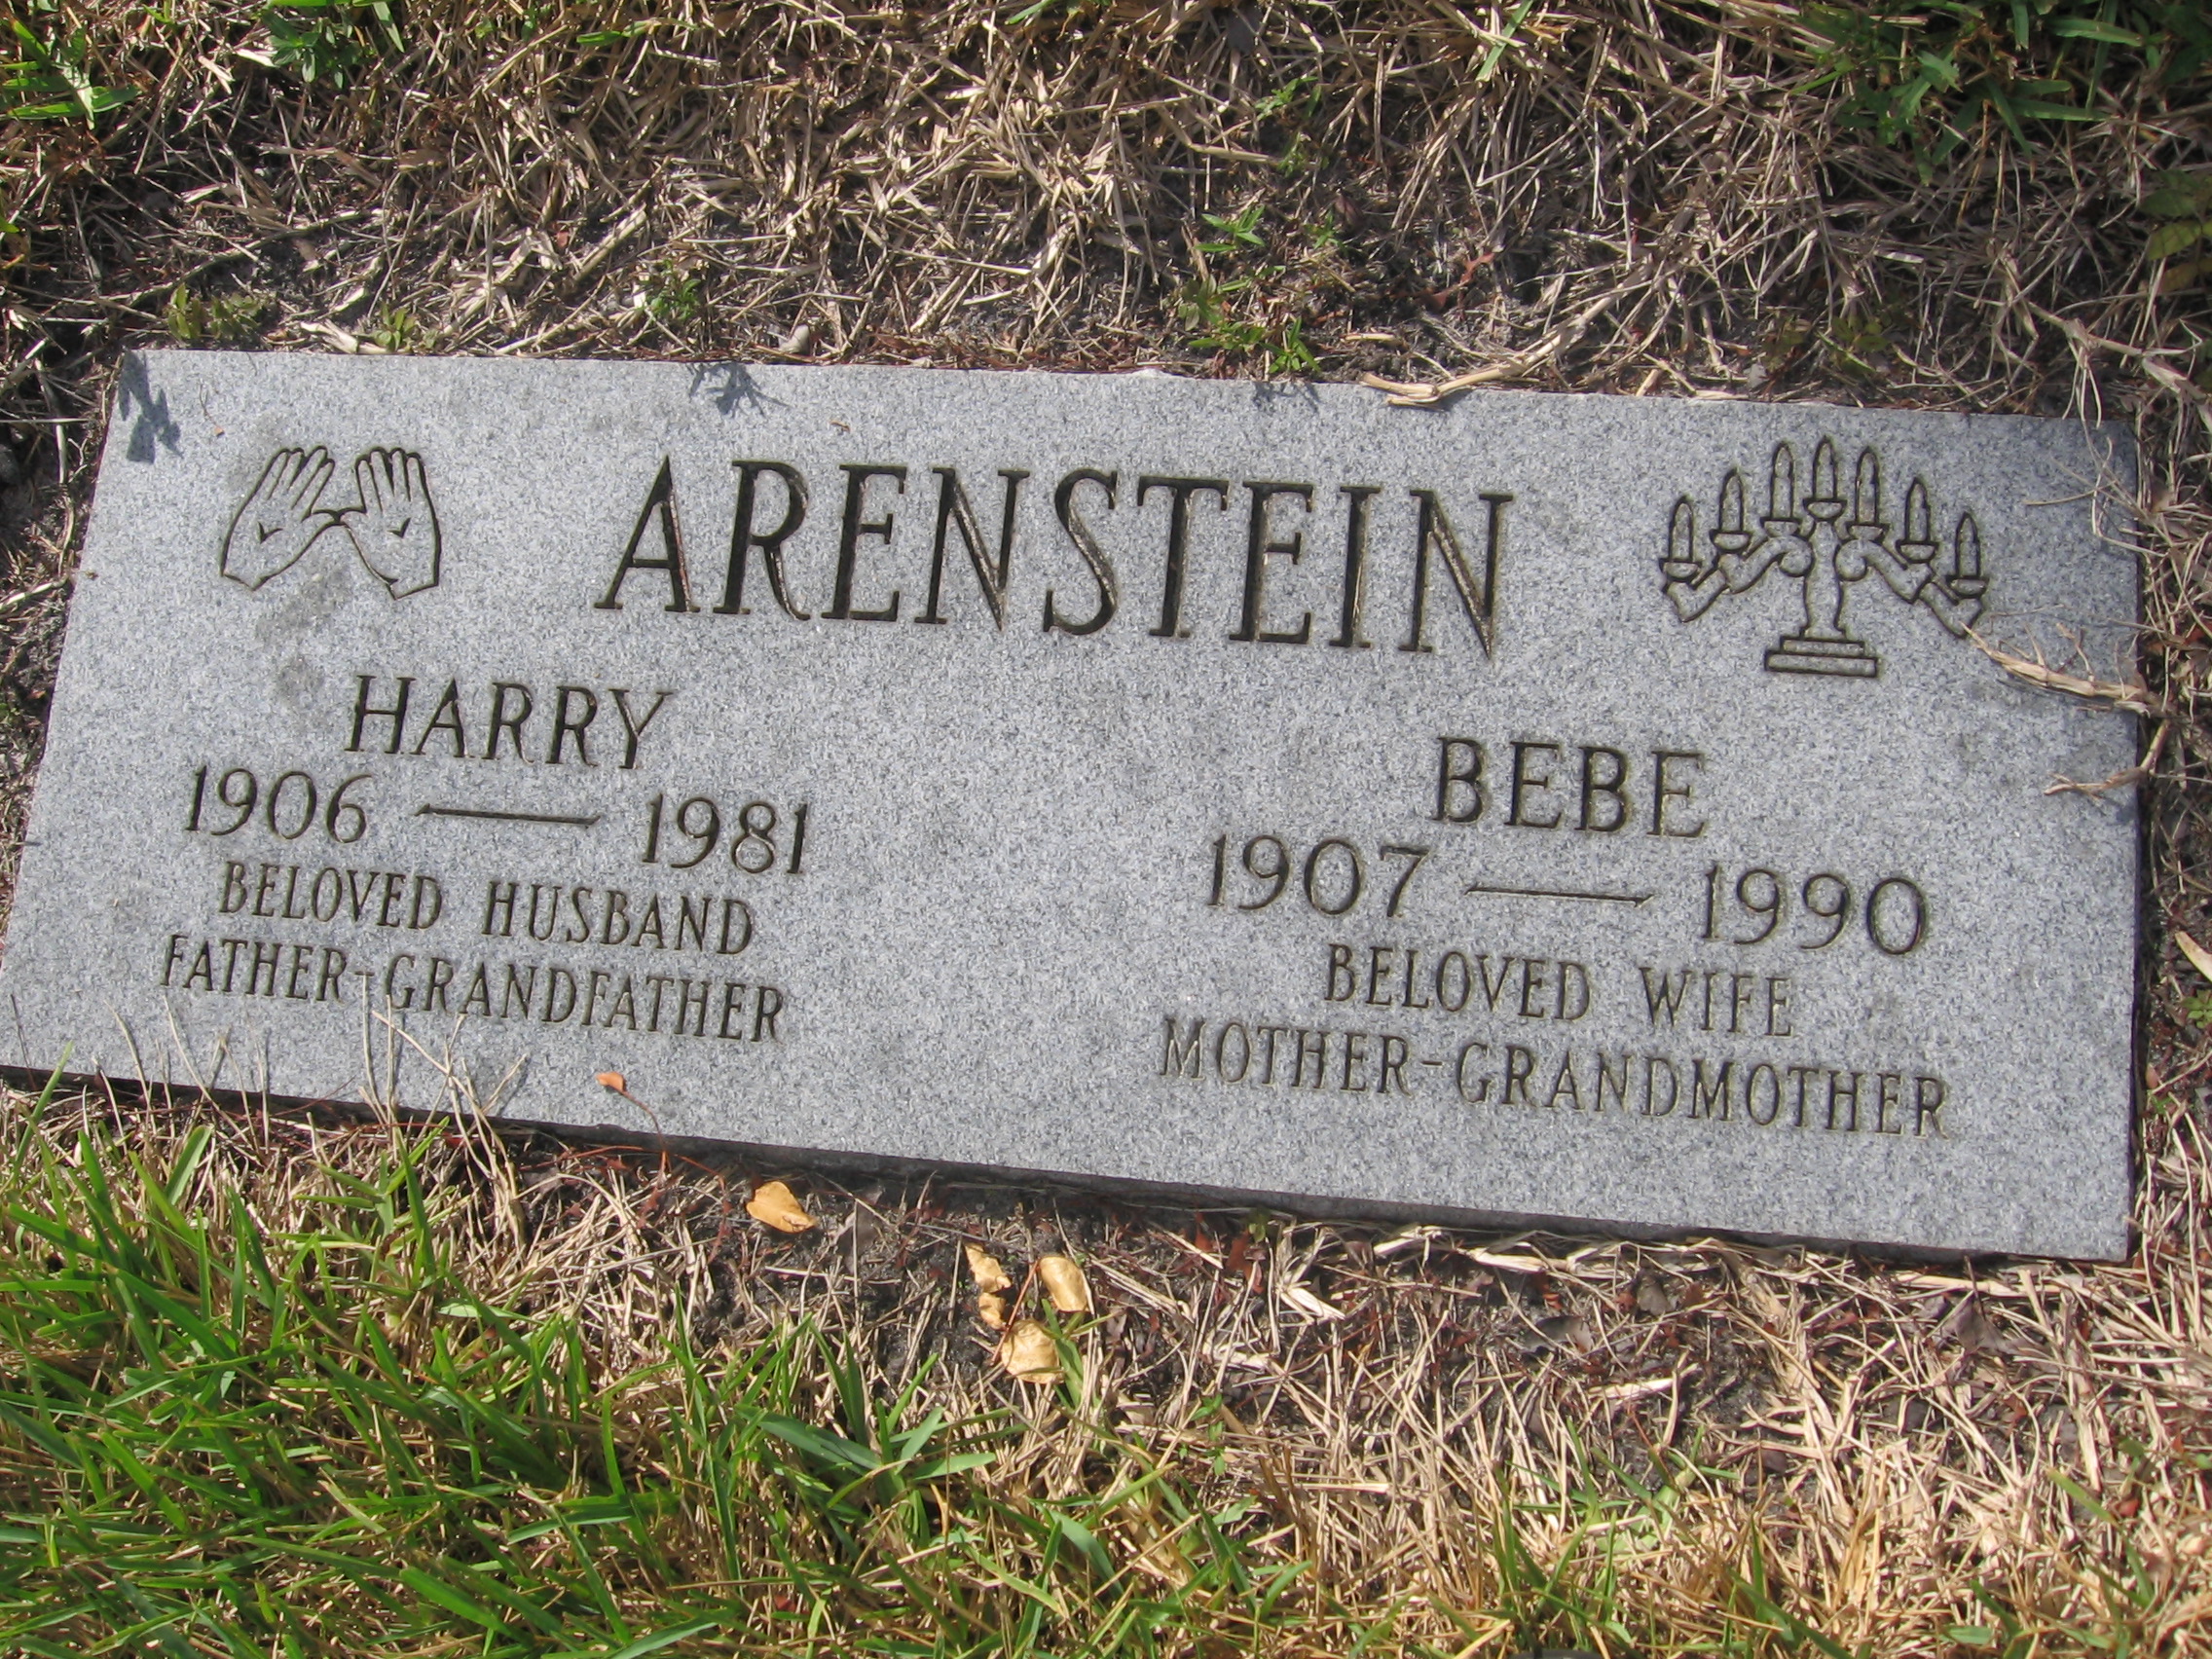 Harry Arenstein